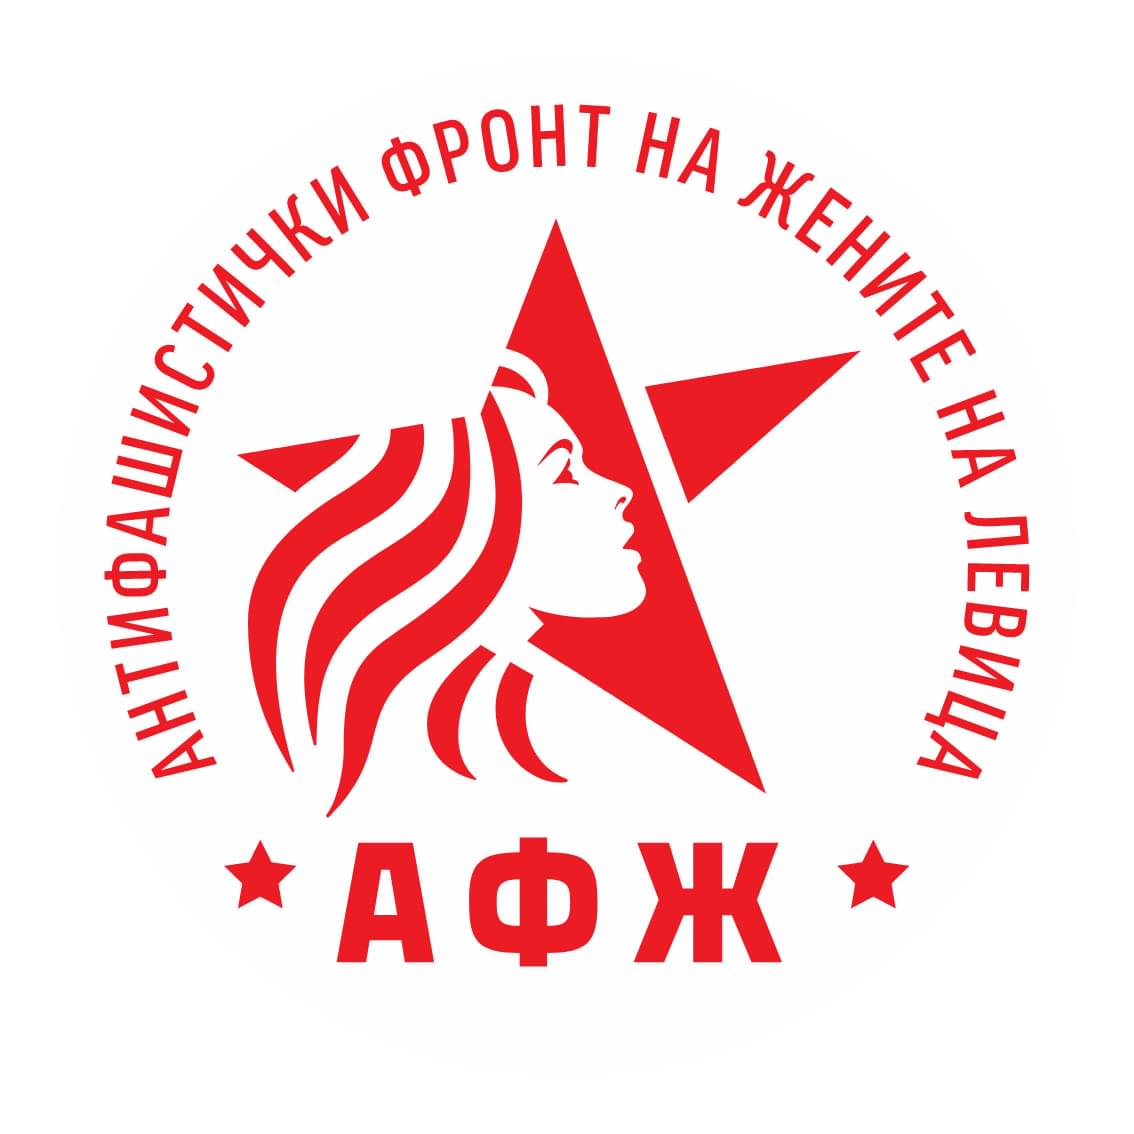 Le Front Antifasciste des Femmes (AFZ) est fondé en Macédoine